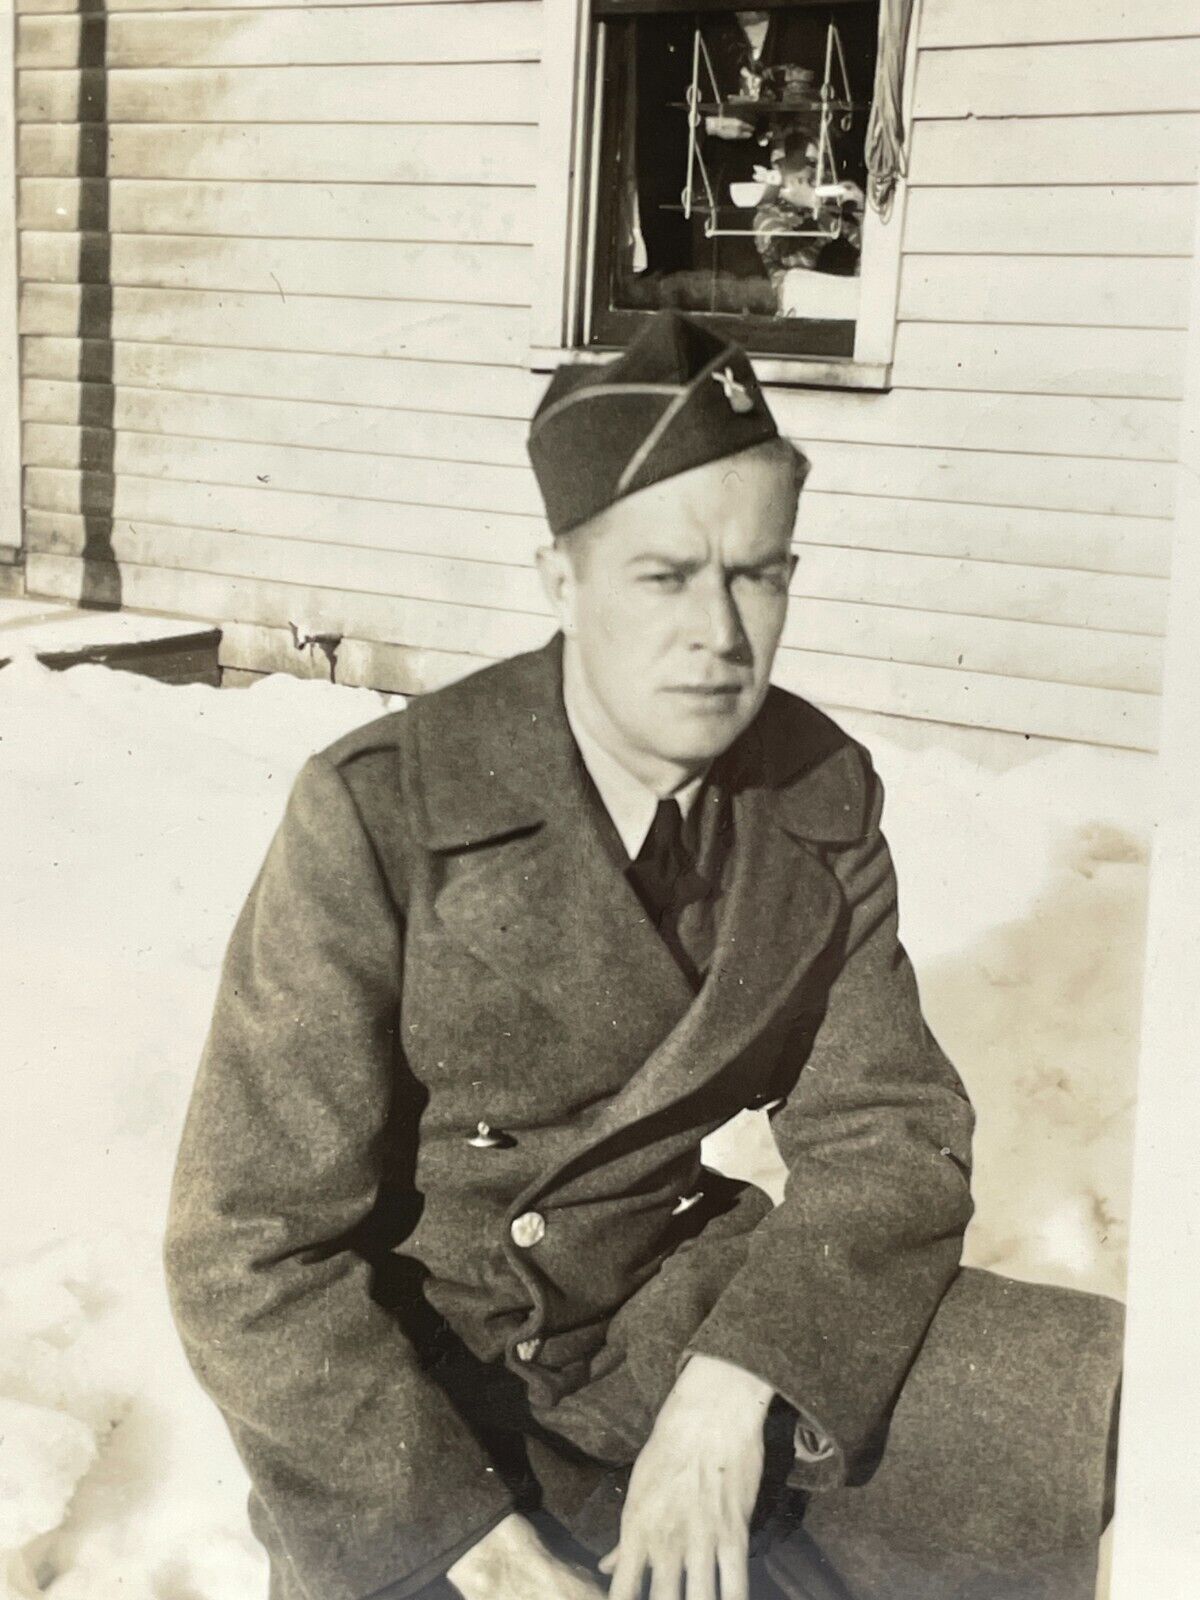 XF Photograph Close Up Portrait Handsome Man Soldier Military Uniform Snow 1940s